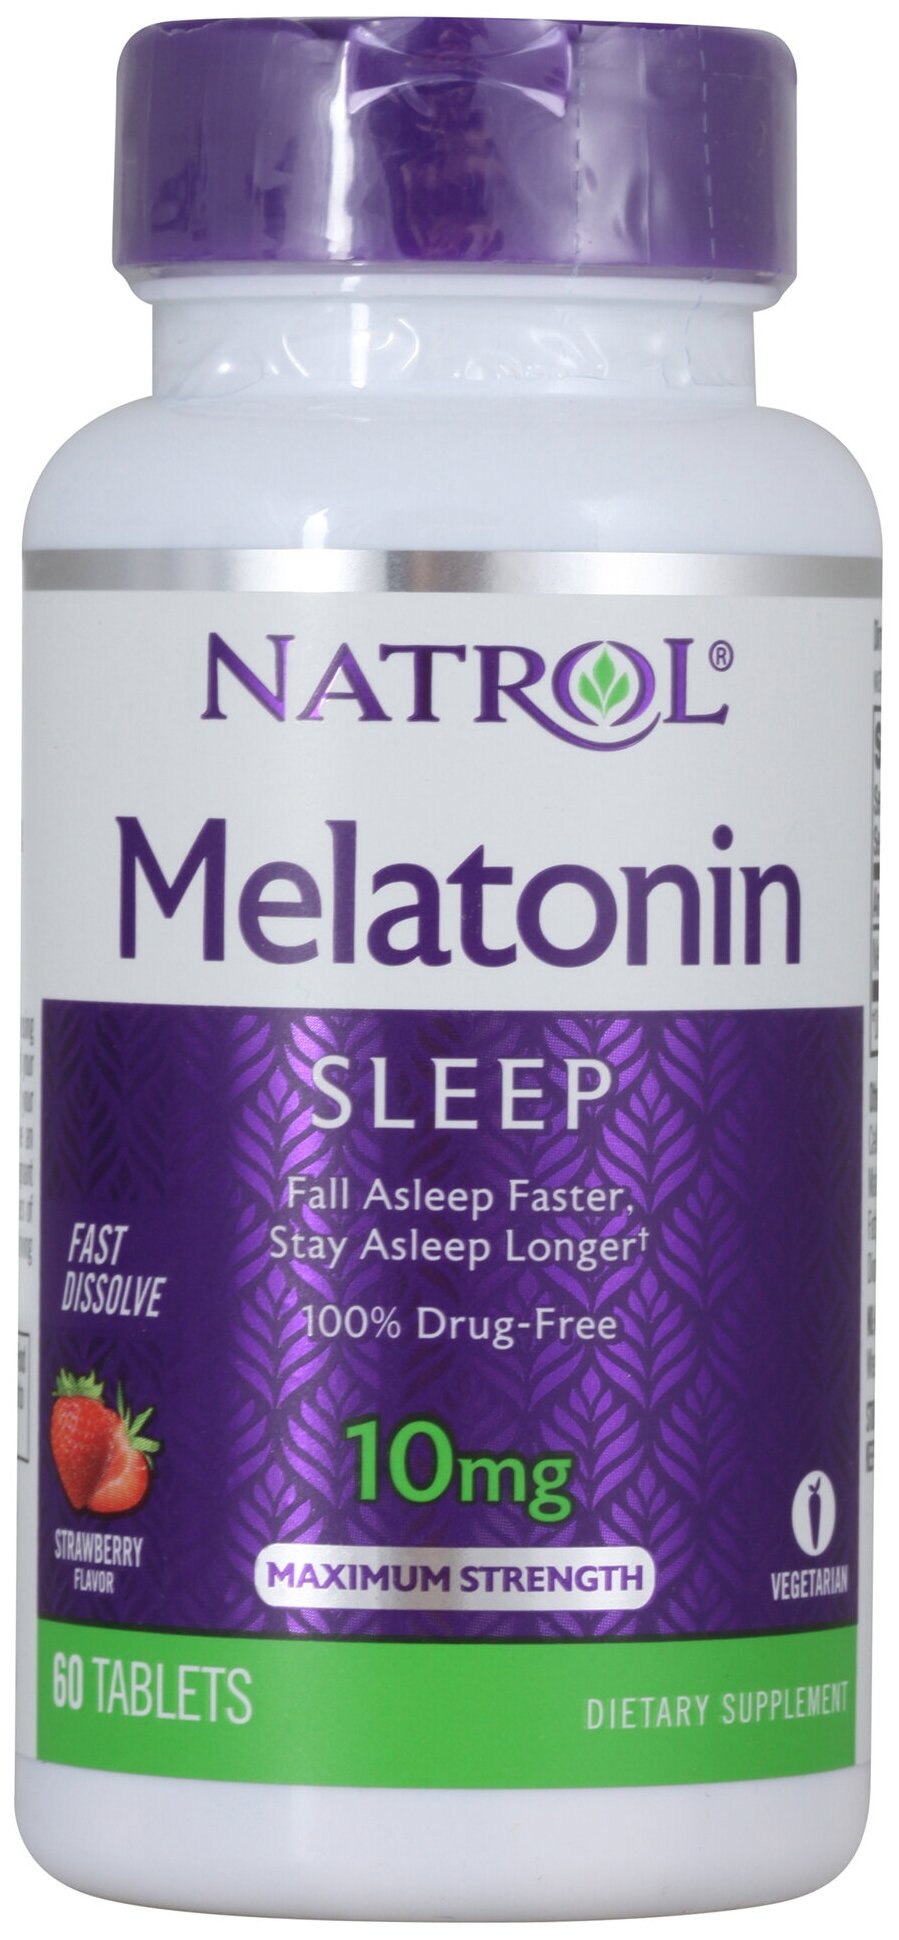 Для сна & Melatonin Natrol Melatonin 10 mg 60 таблеток, Нейтральный